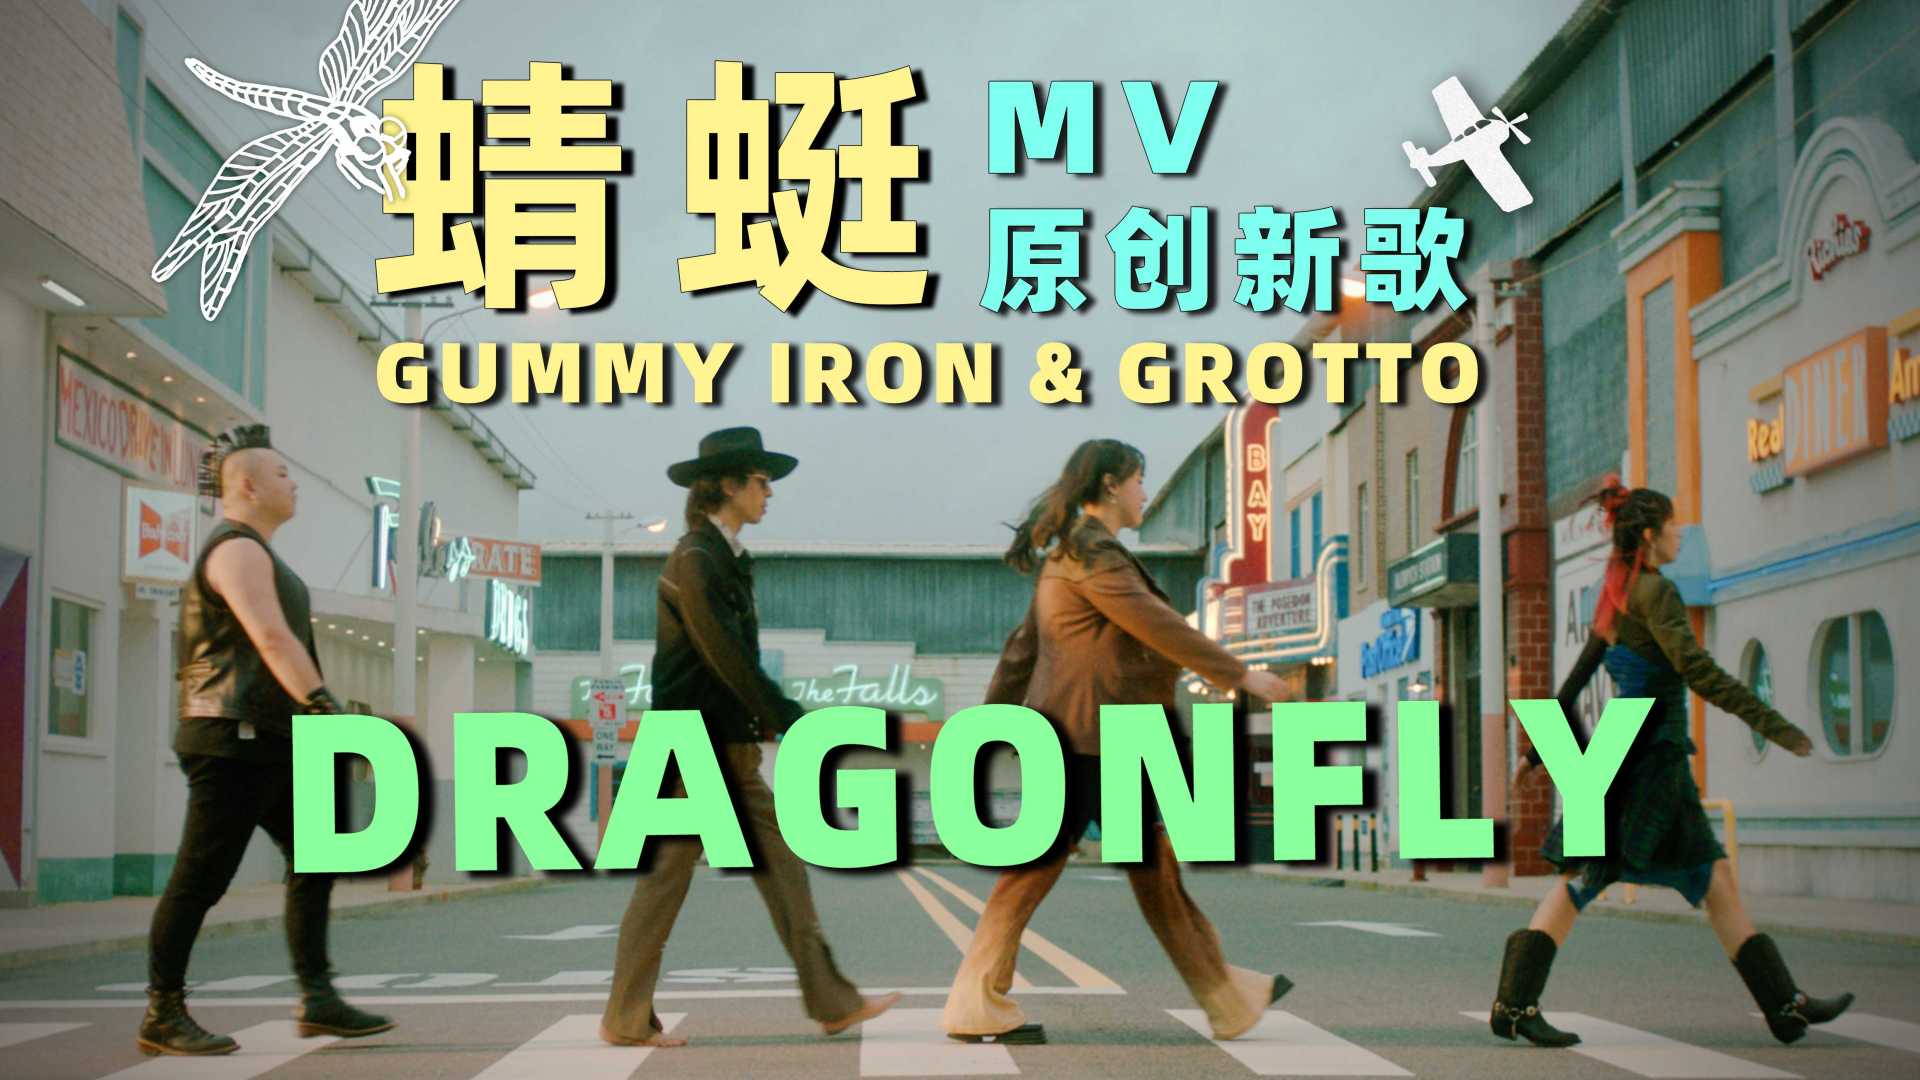 《蜻蜓》铁皮软糖xGROTTO 原创新歌MV